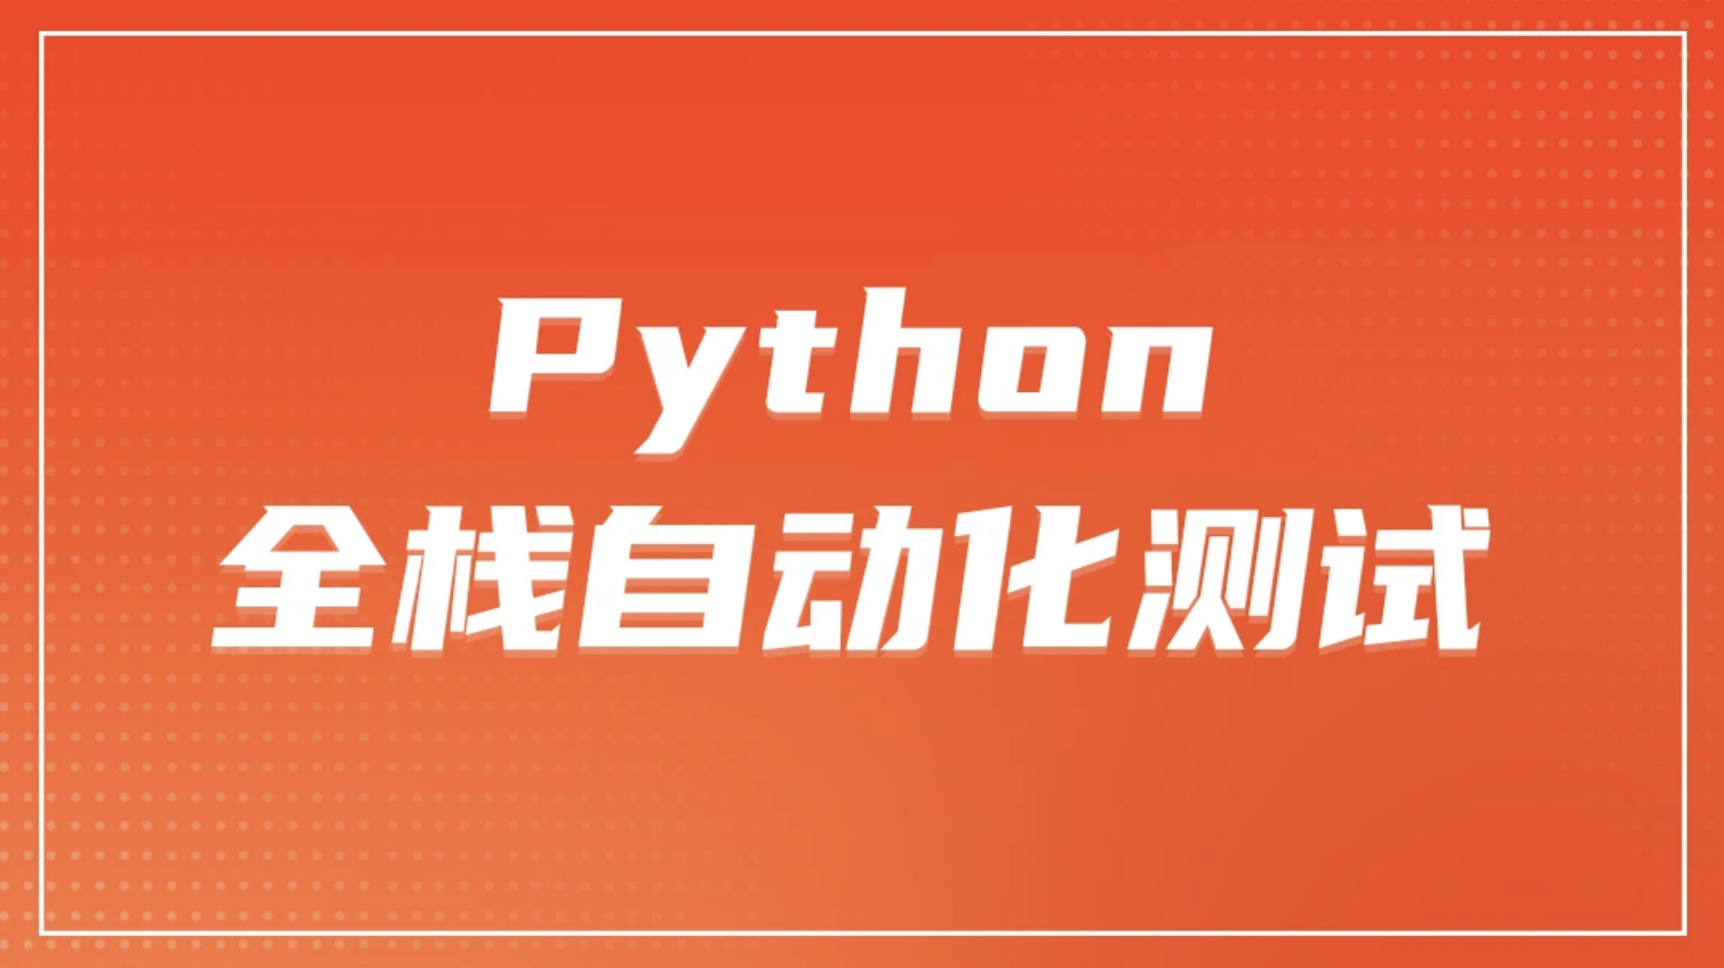 柠檬 软件测试之python全栈自动化测试工程师第52期